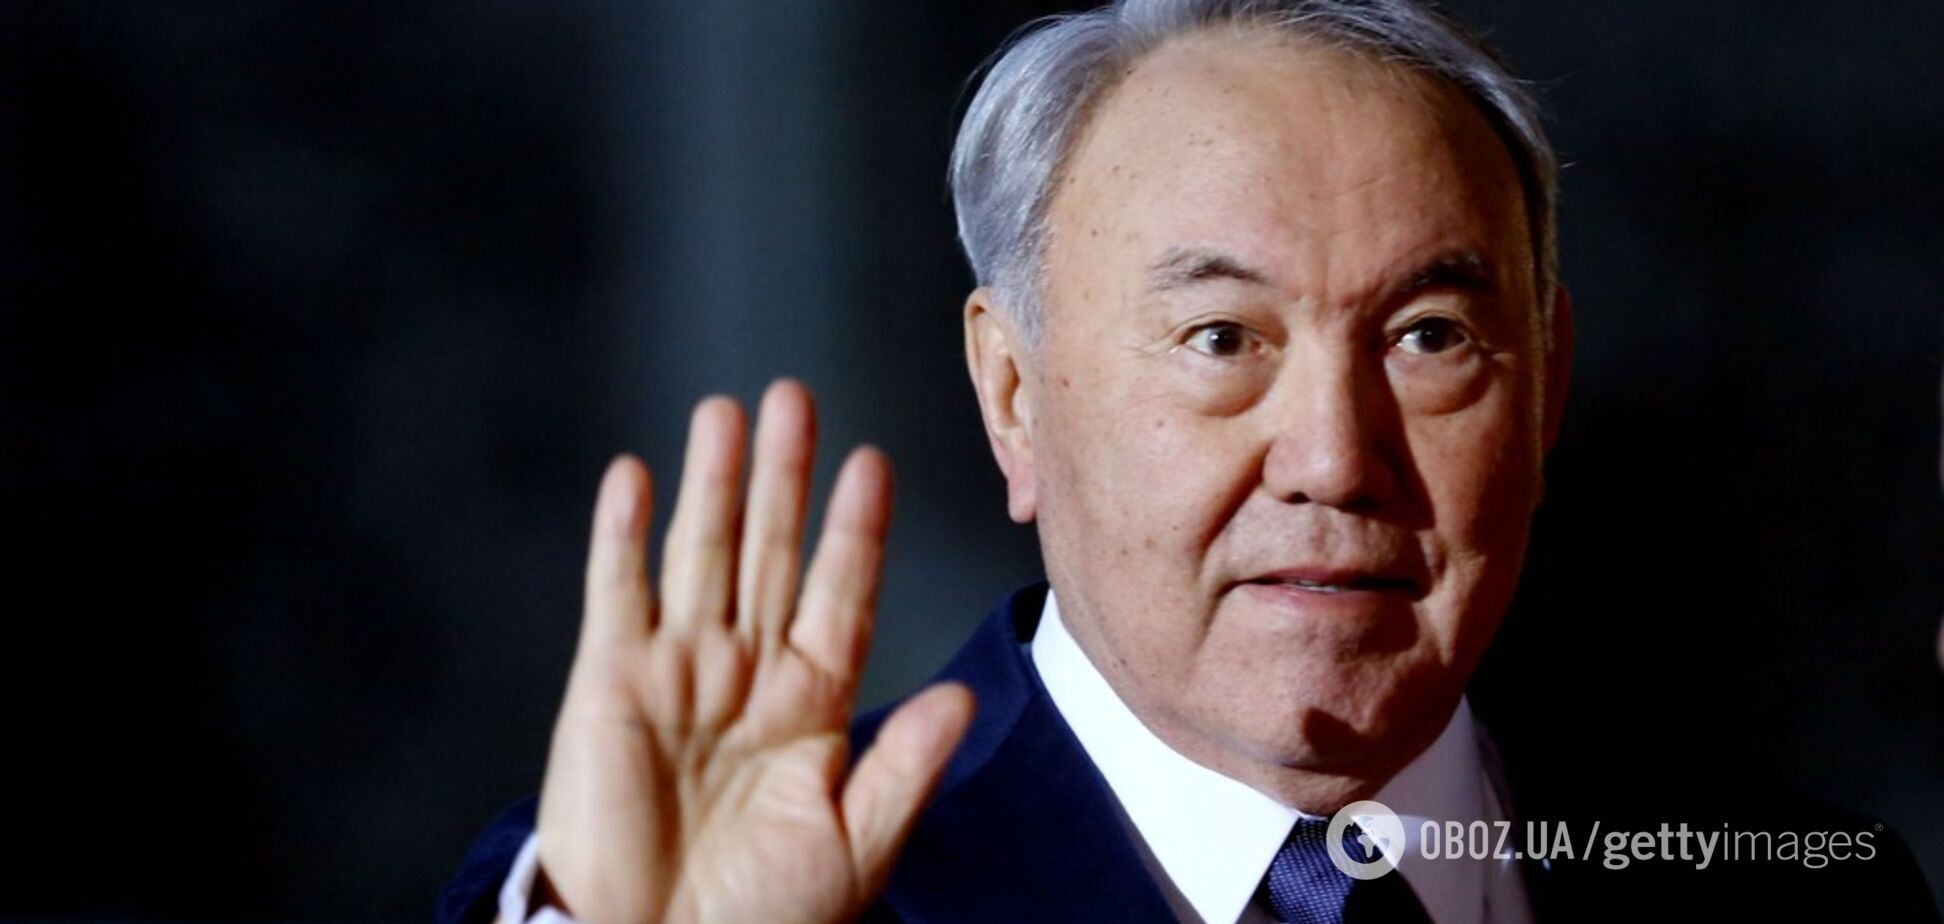 'Запланировал еще месяц назад': раскрыта 'изнанка' отставки Назарбаева